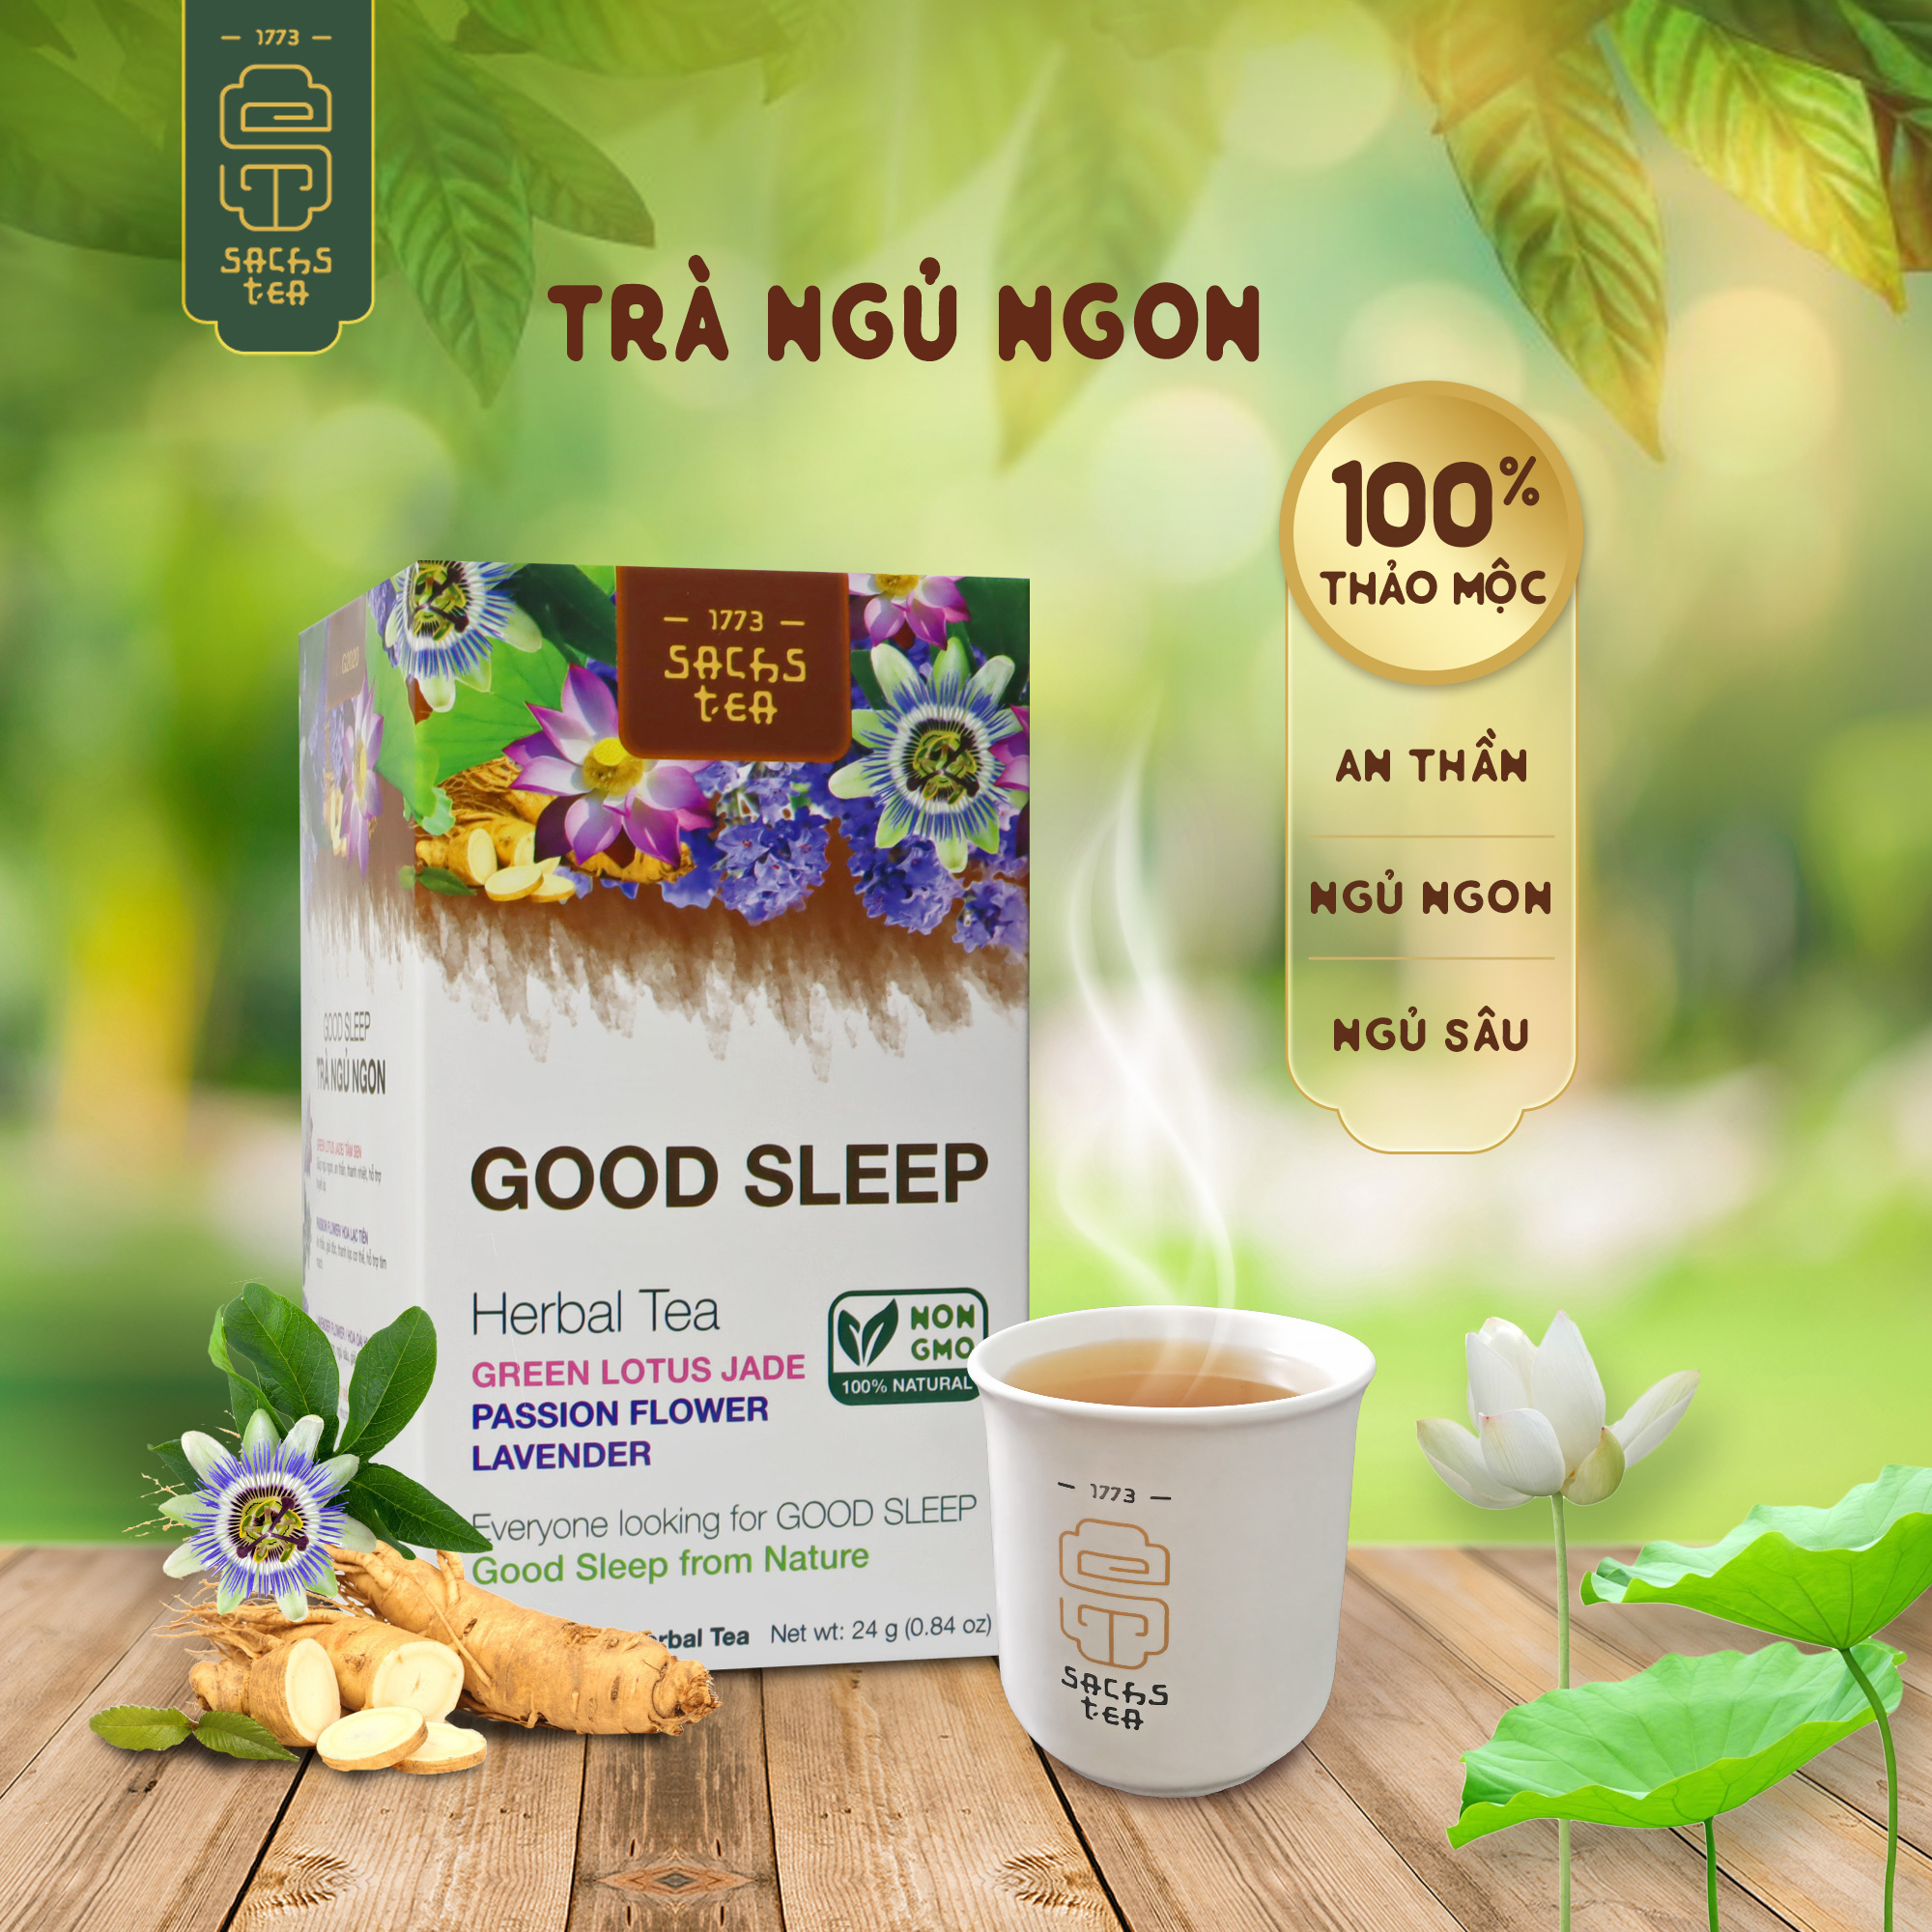 Trà ngủ ngon GoodSleep SACHS TEA 1773 giúp dễ ngủ, an thần, giảm stress, tốt cho tim mạch thành phần thảo mộc tự nhiên 16 túi/hộp